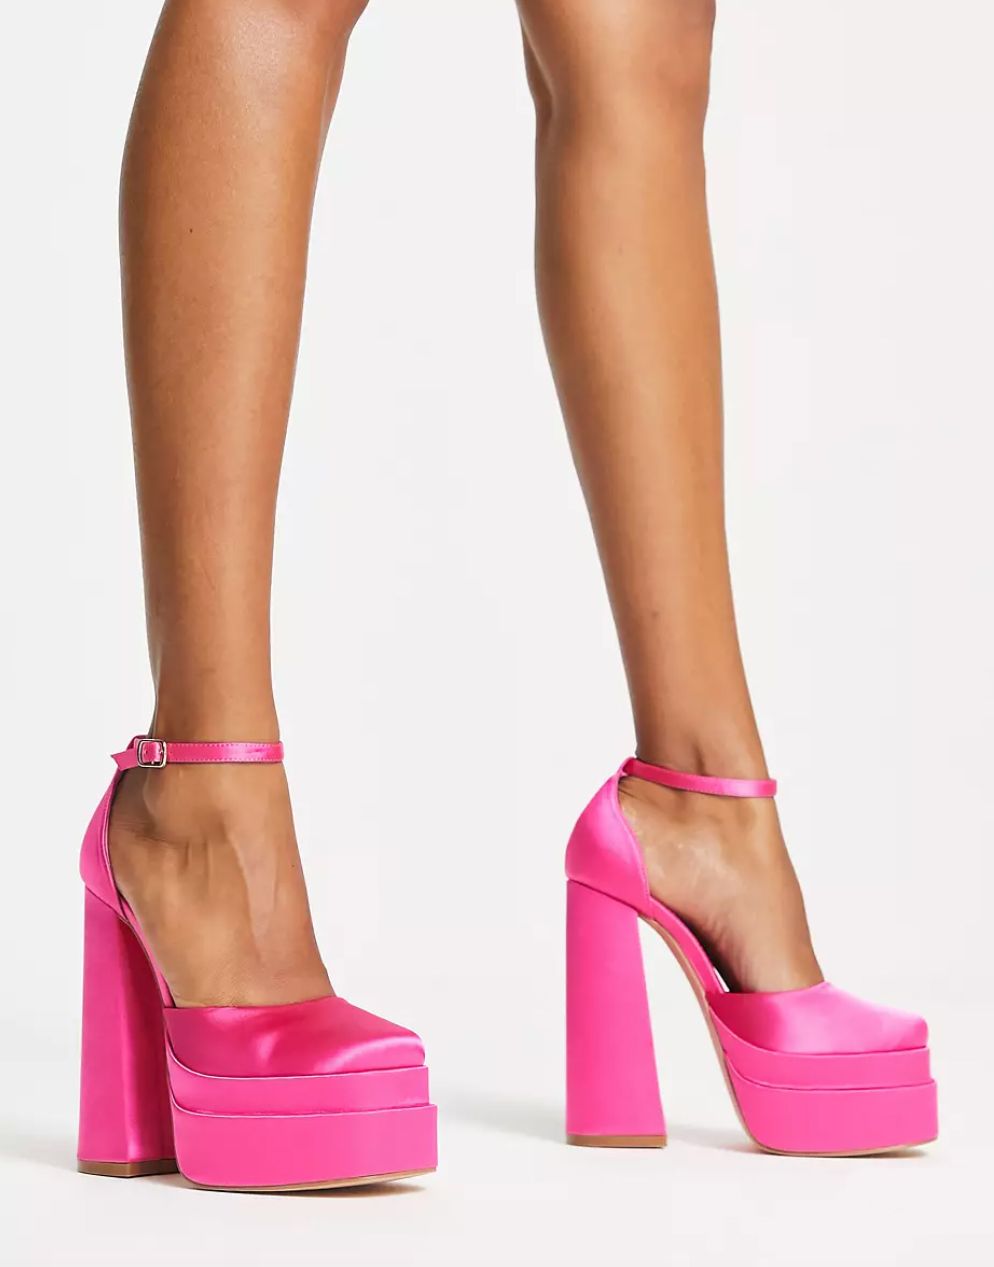 ASOS hot pink heels